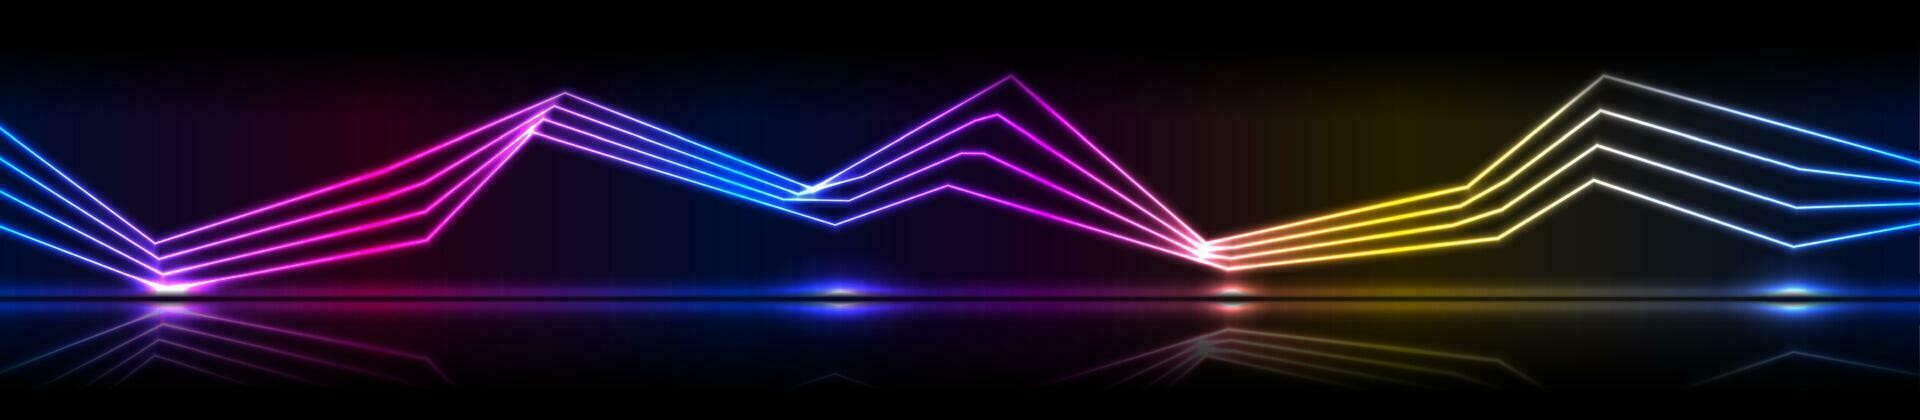 lysande neon laser böjd rader teknologi baner vektor